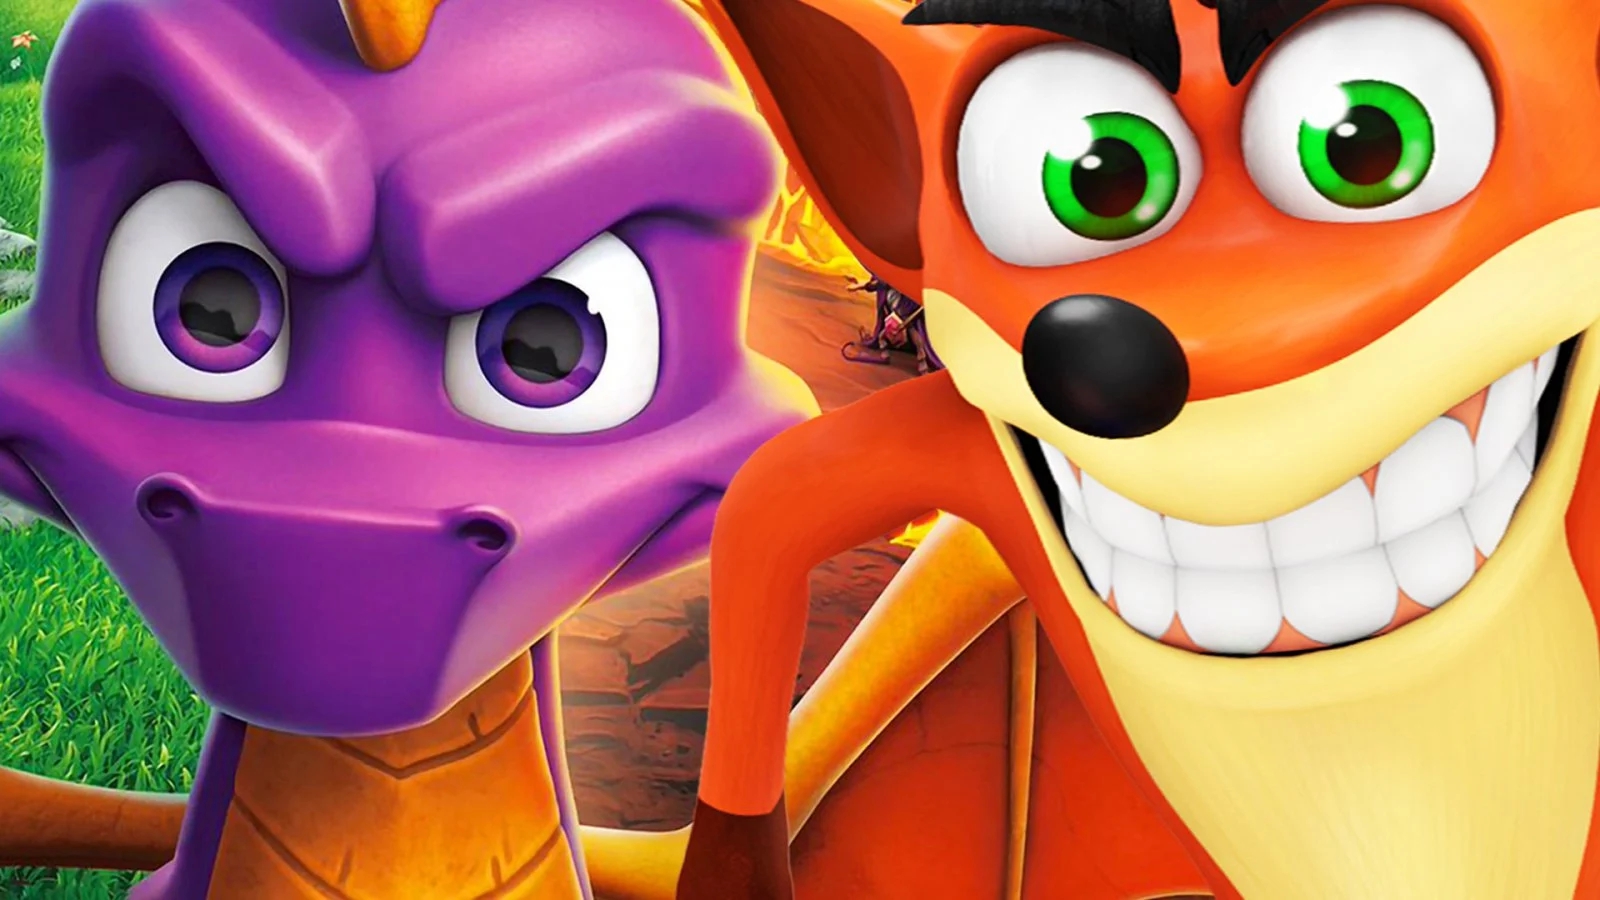 Toys for Bob si separa da Microsoft, lo studio di Crash e Spyro diventa indipendente